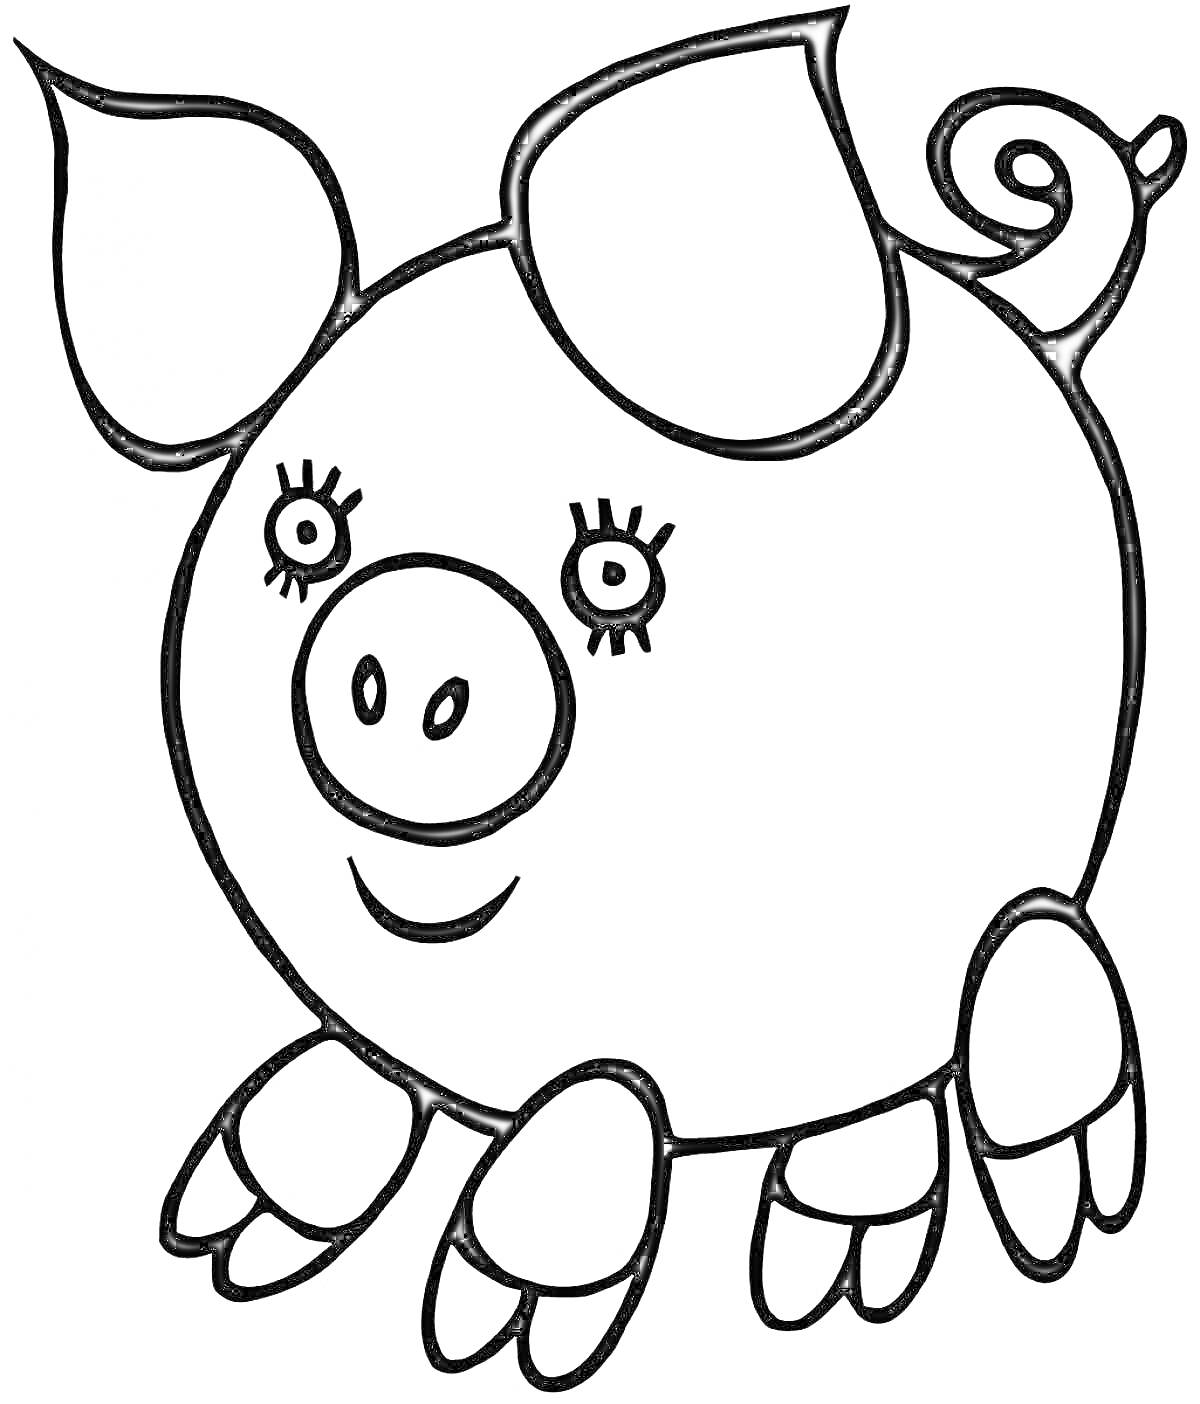 Раскраска Свинка с ушами, пятачком, лапками и хвостиком